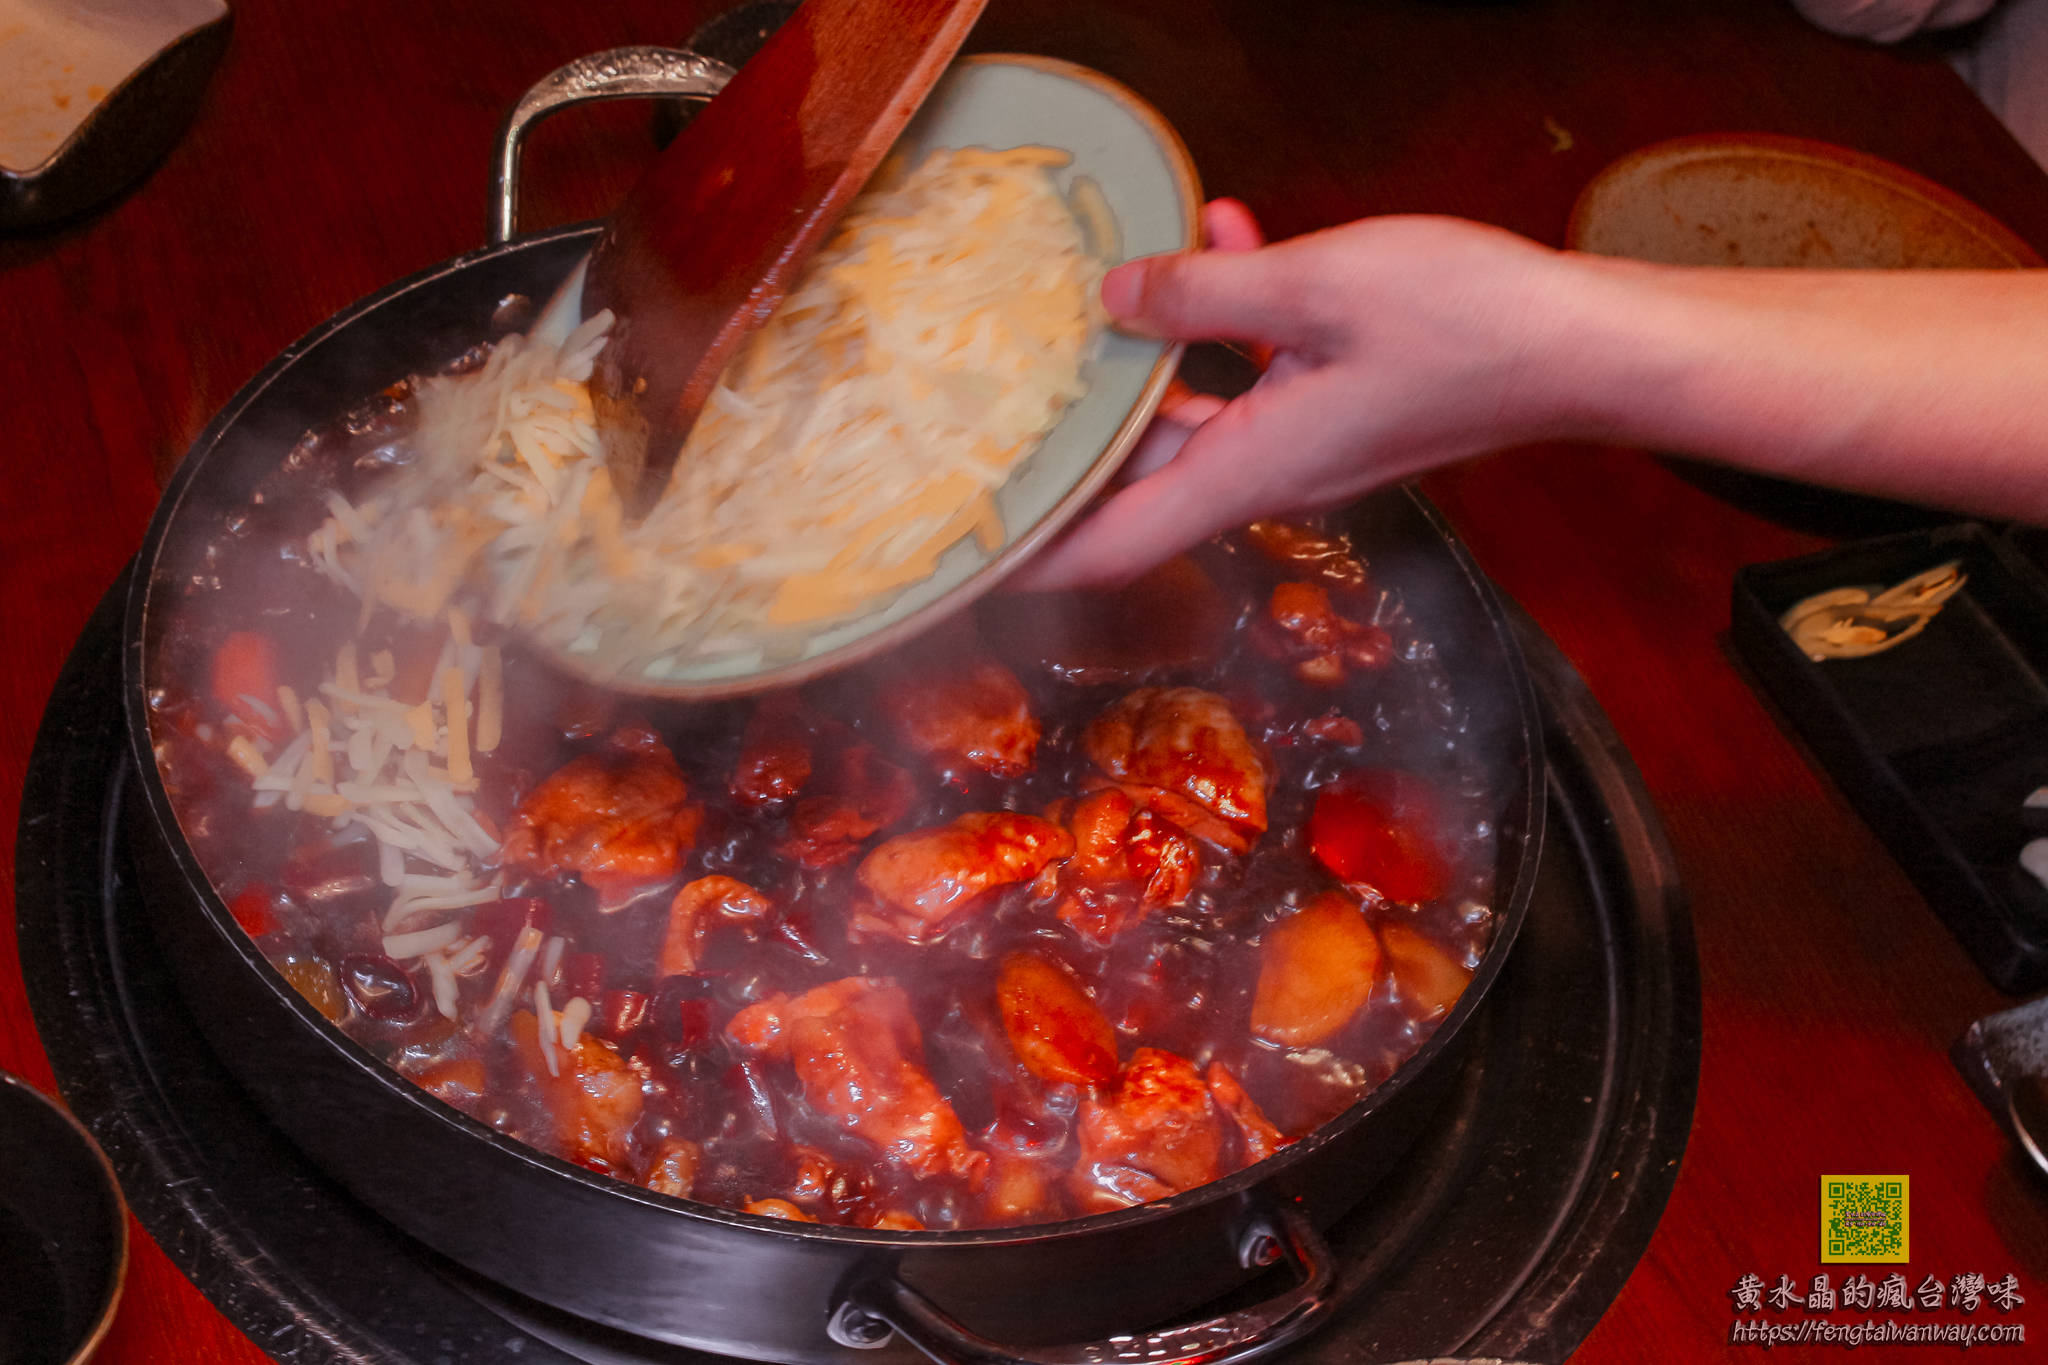 韓金館【台北美食】|台北網美必來餐廳；韓式料理&韓國烤肉&韓國鍋物；還可韓服試穿體驗